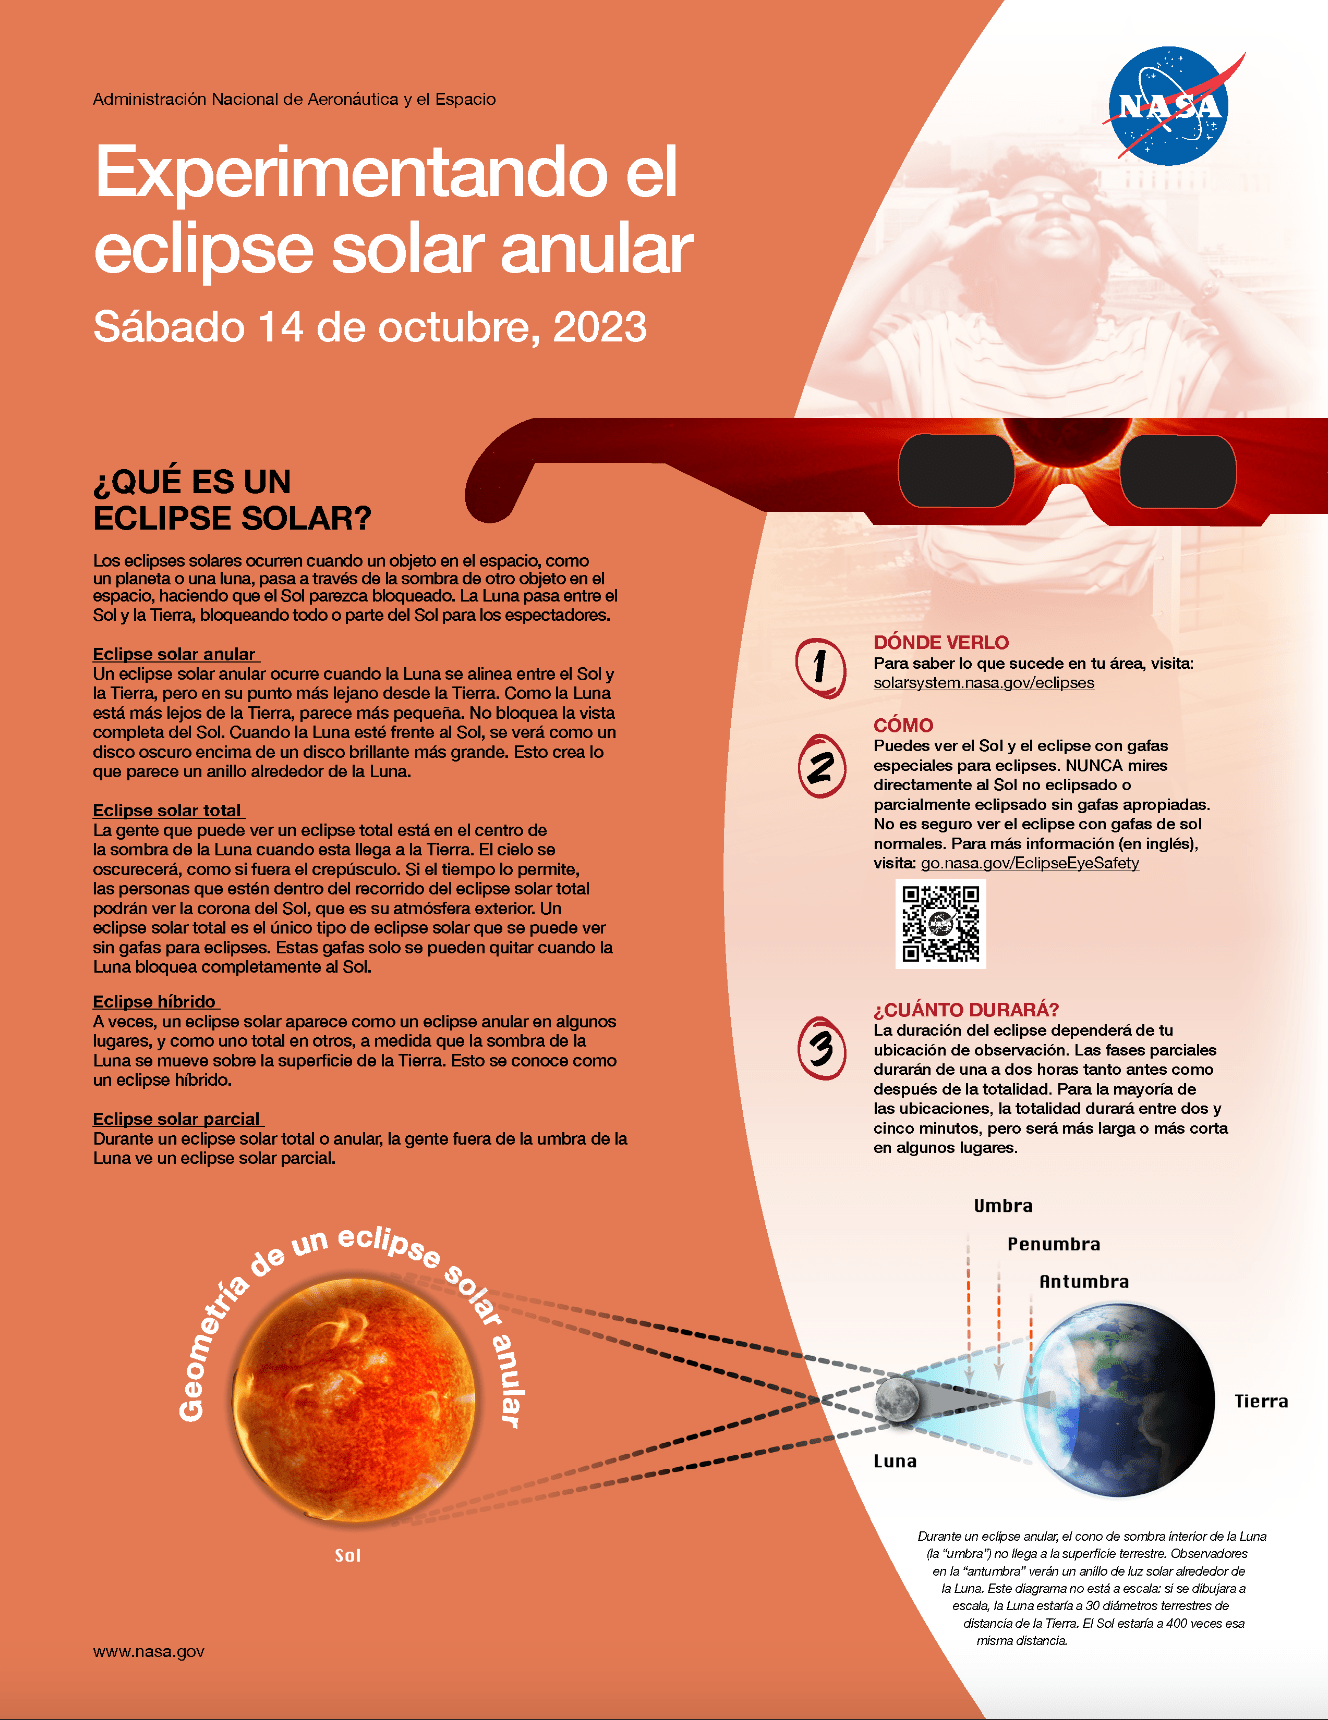 Este póster en tonos de anaranjado contiene información sobre cómo observar un eclipse anular de forma segura.